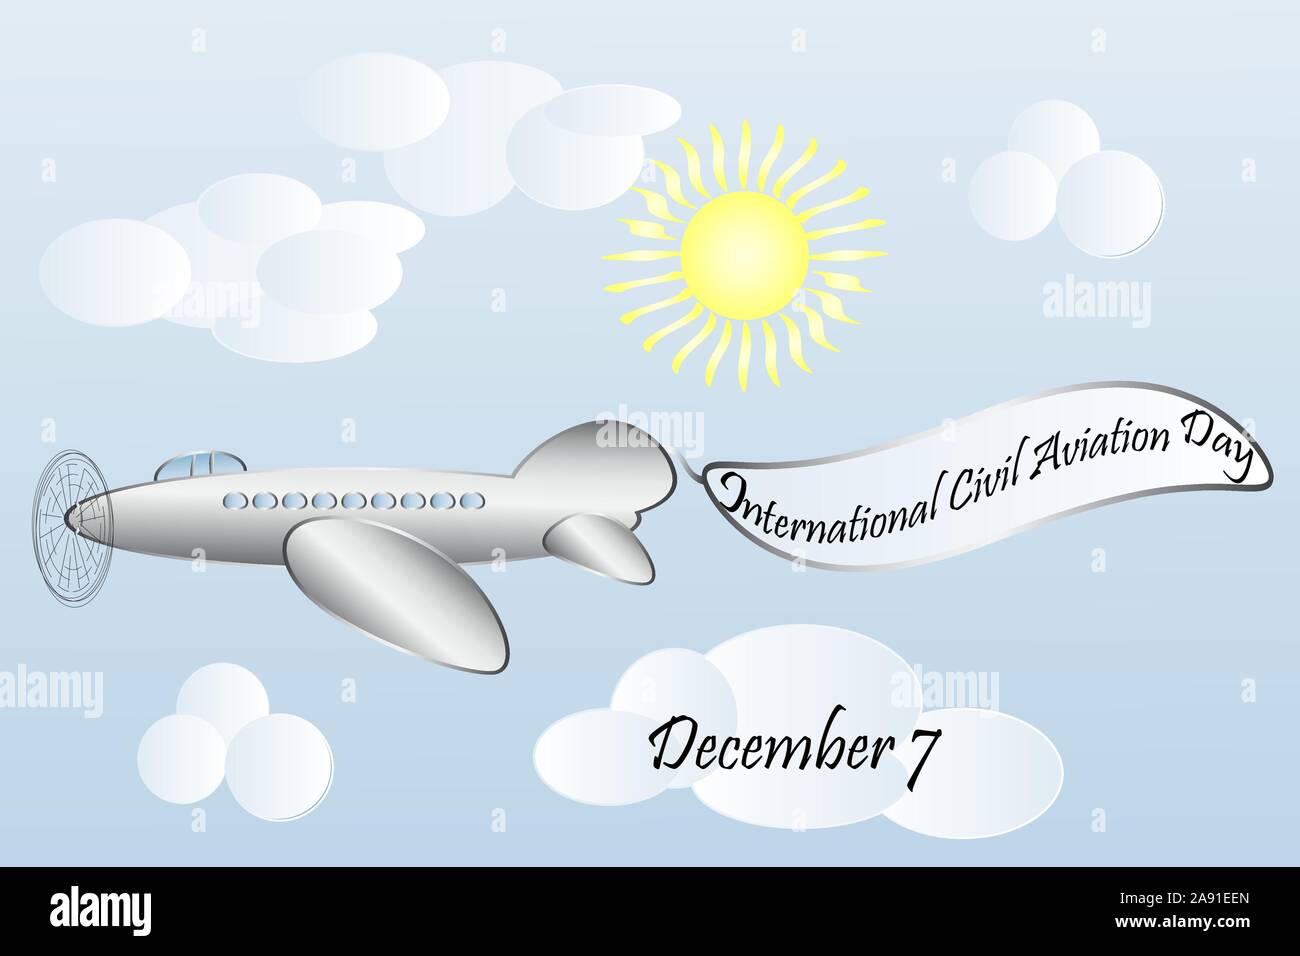 International Civil aviation day. December, 7 Stock Vector